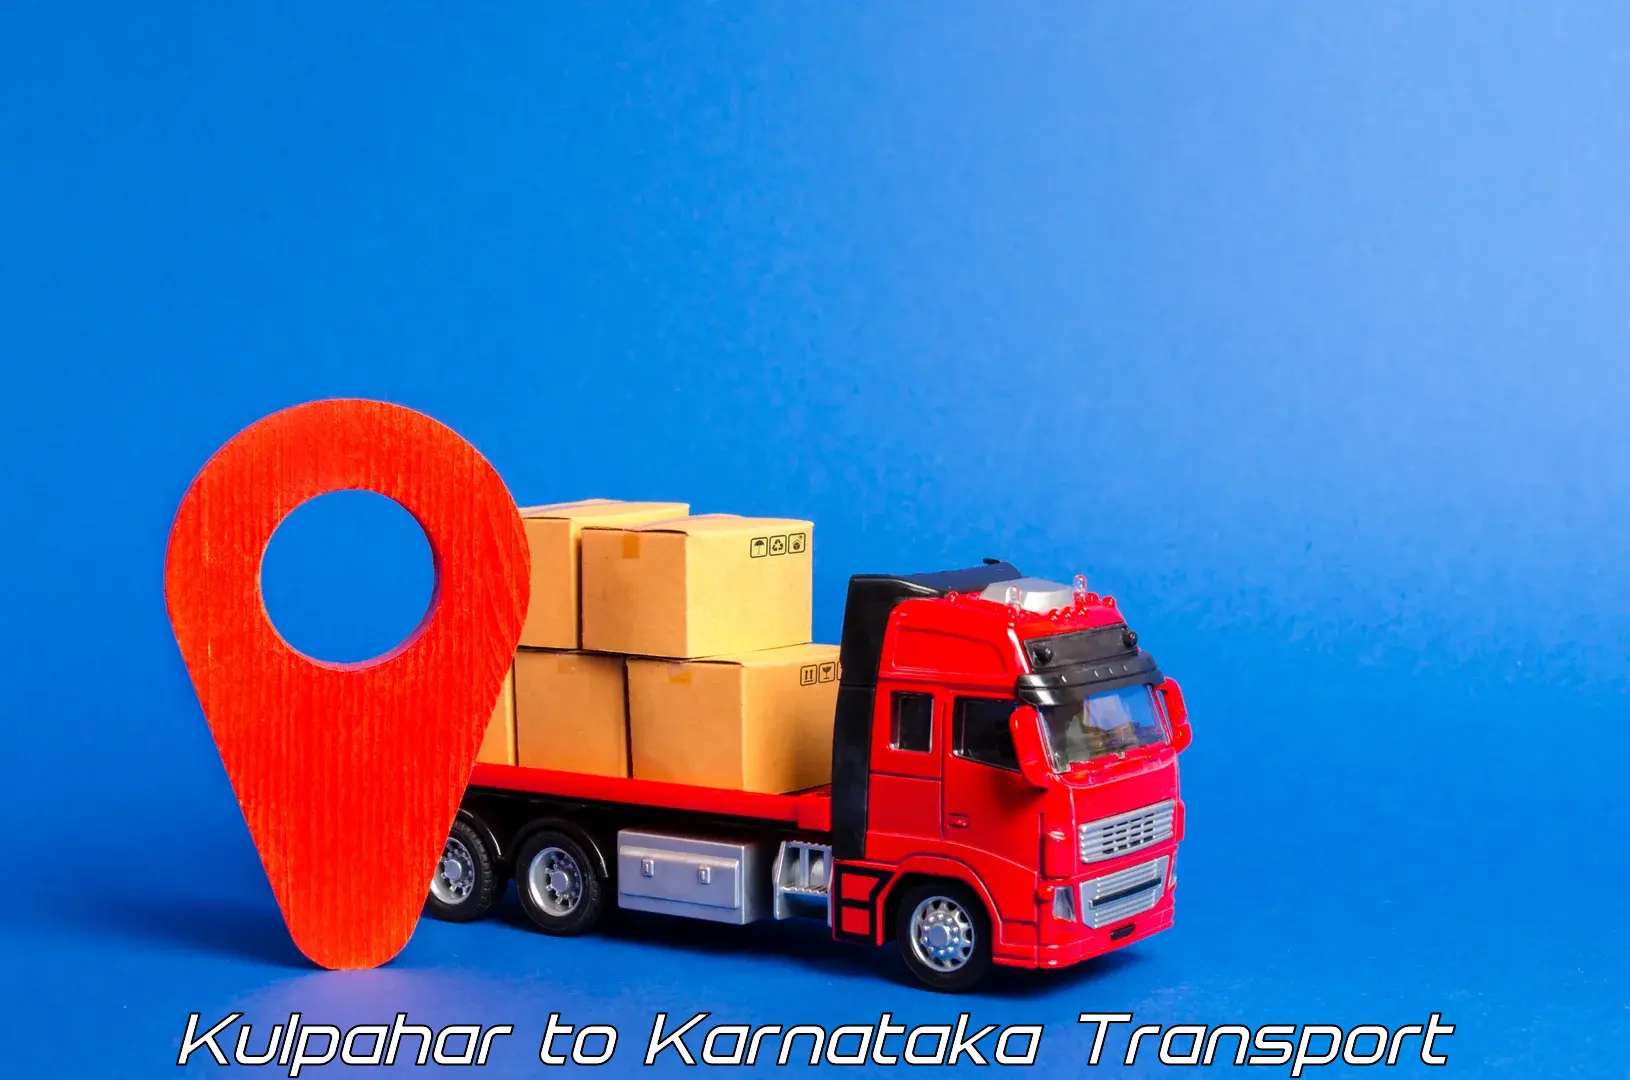 Intercity transport in Kulpahar to Sagara